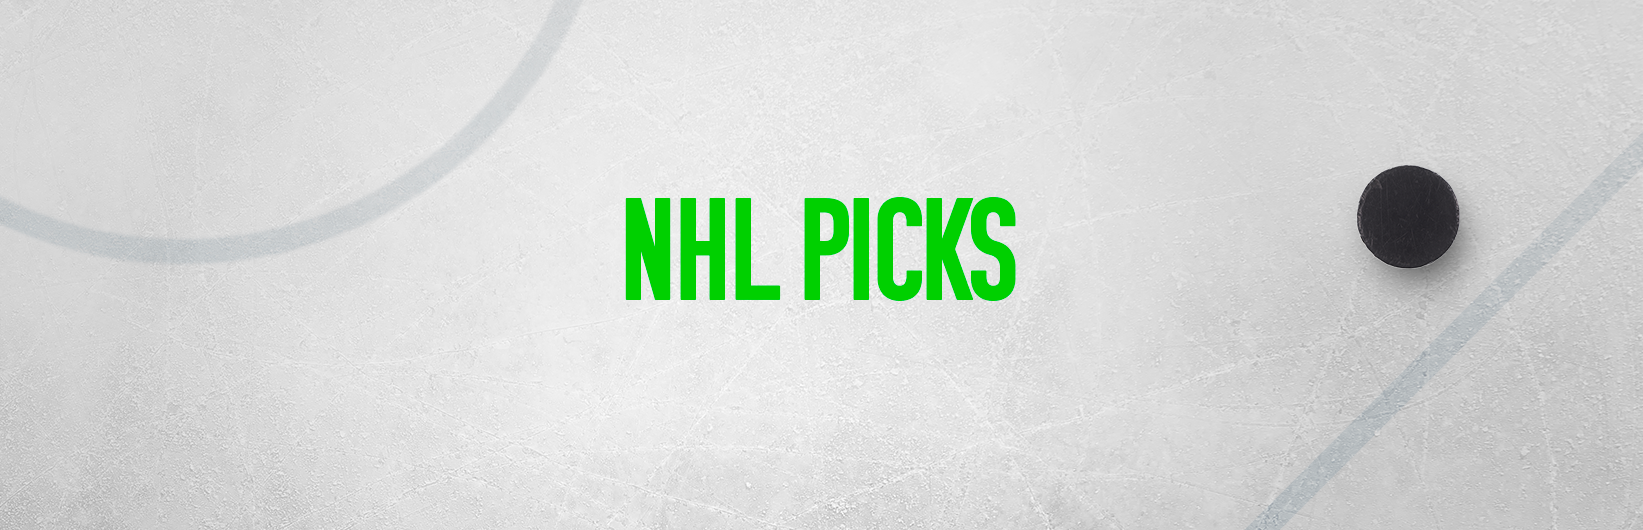 NHL picks: Best bets for Thursday December 7